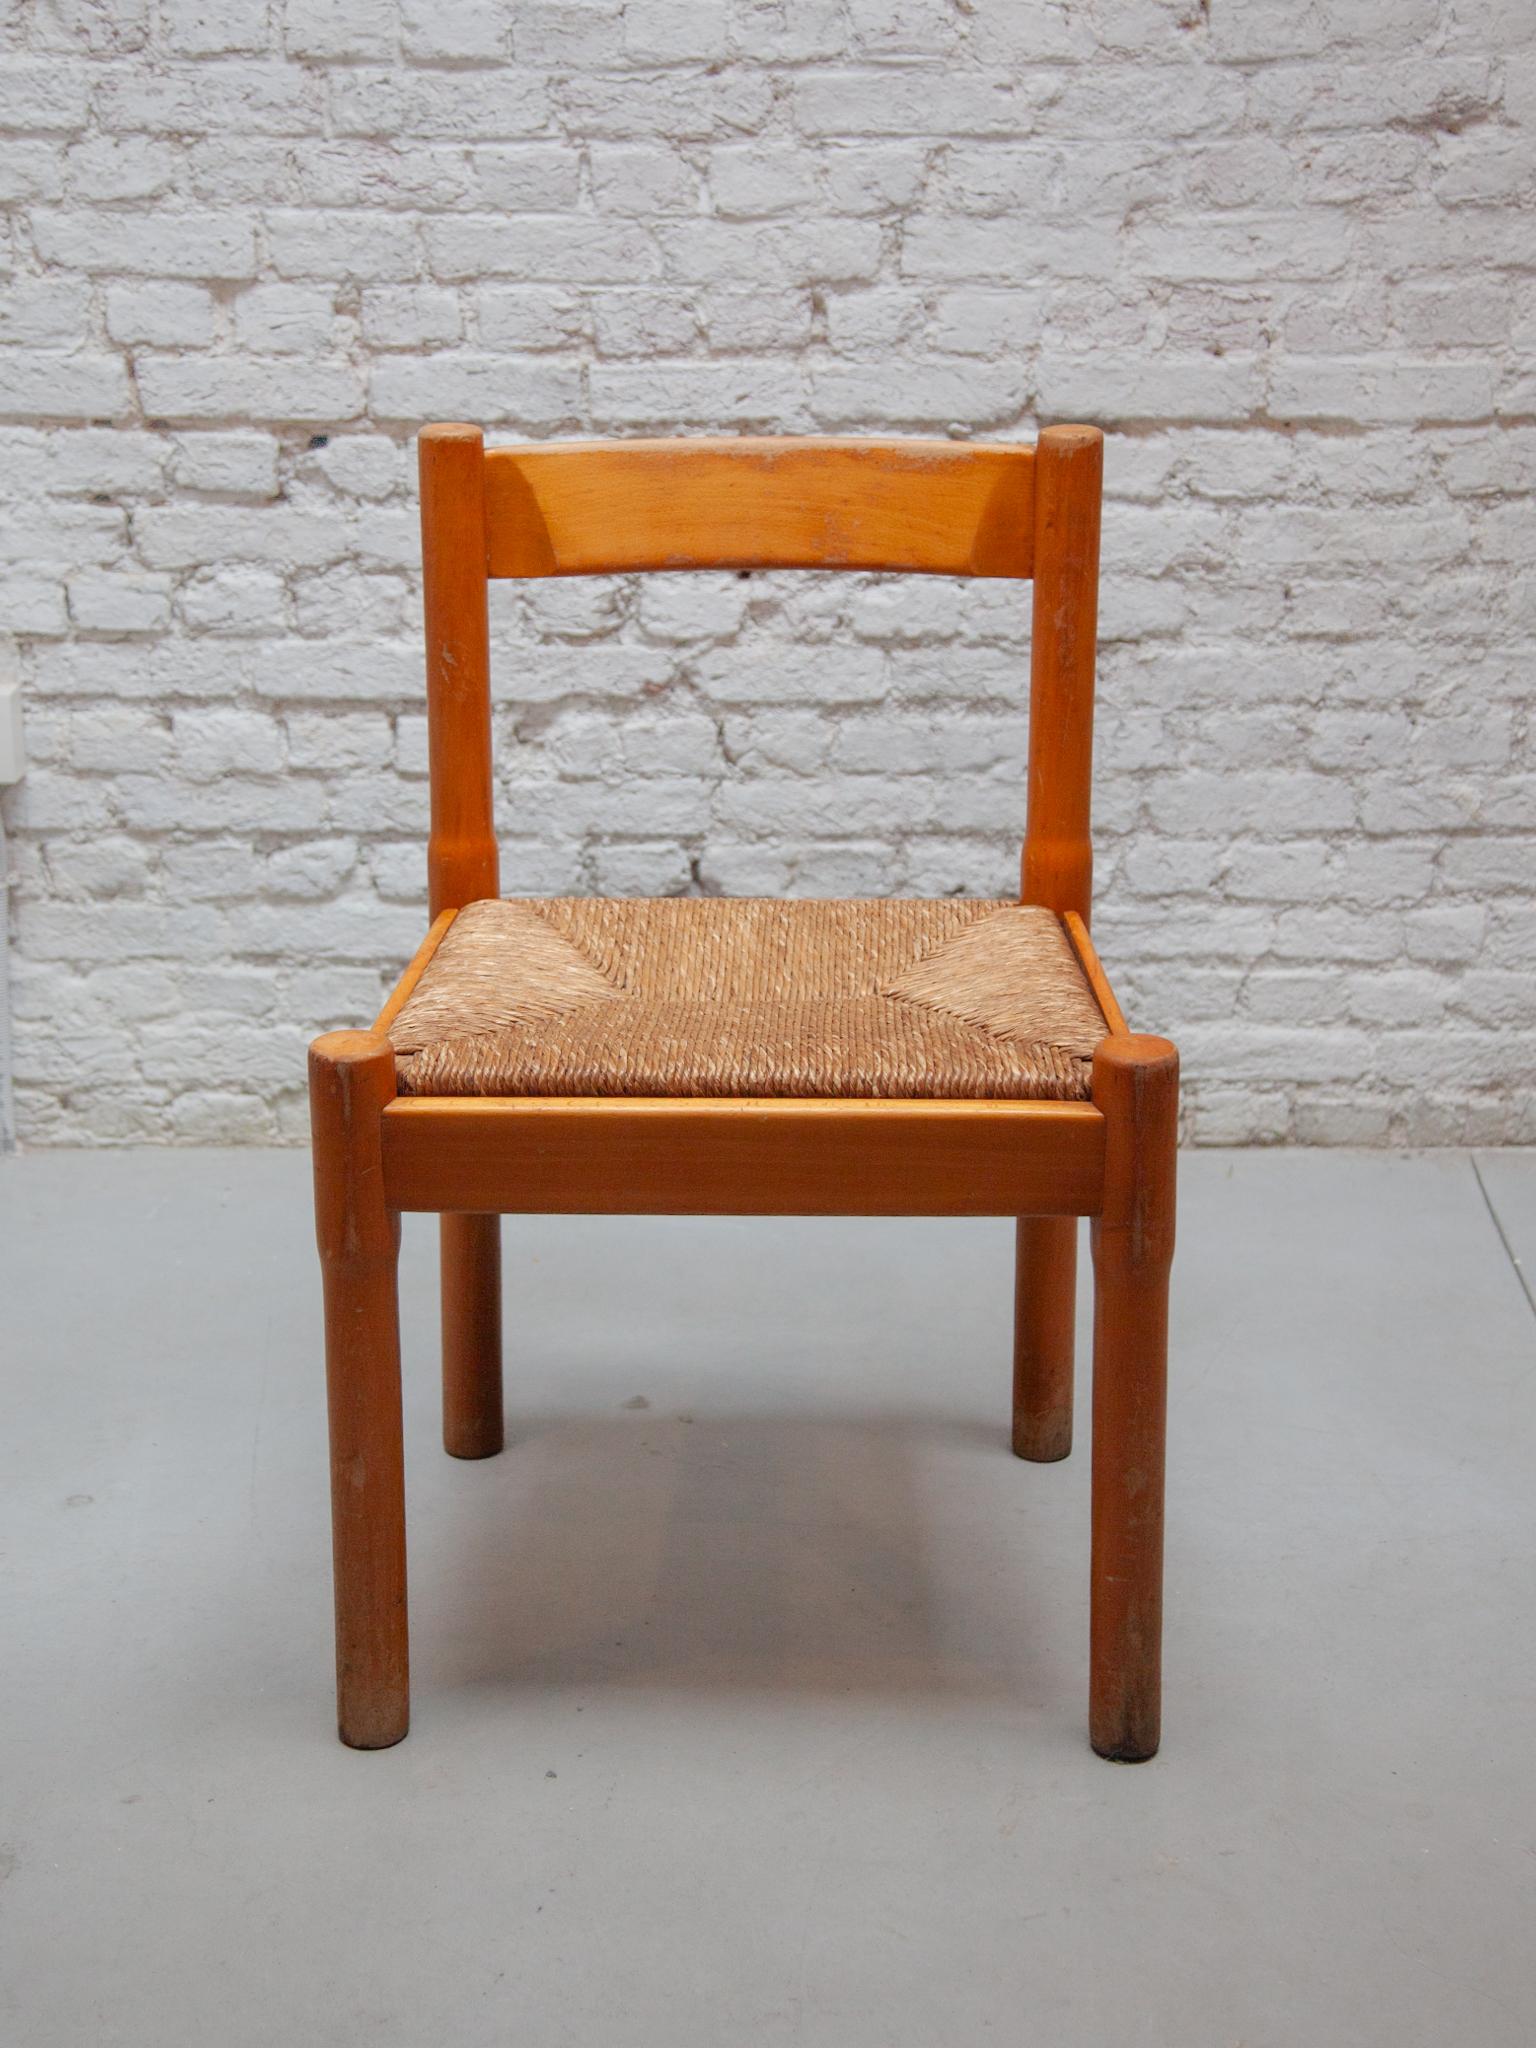 Ein Natural schöner Satz von sechs Carimate Modell Esszimmerstühle von Vico Magistretti aus den achtziger Jahren in Naturholz und Rattan.fünf Stühle sind in einem perfekten Zustand mit Gebrauchsspuren der sechste ist stabil, aber restauriert.



Der